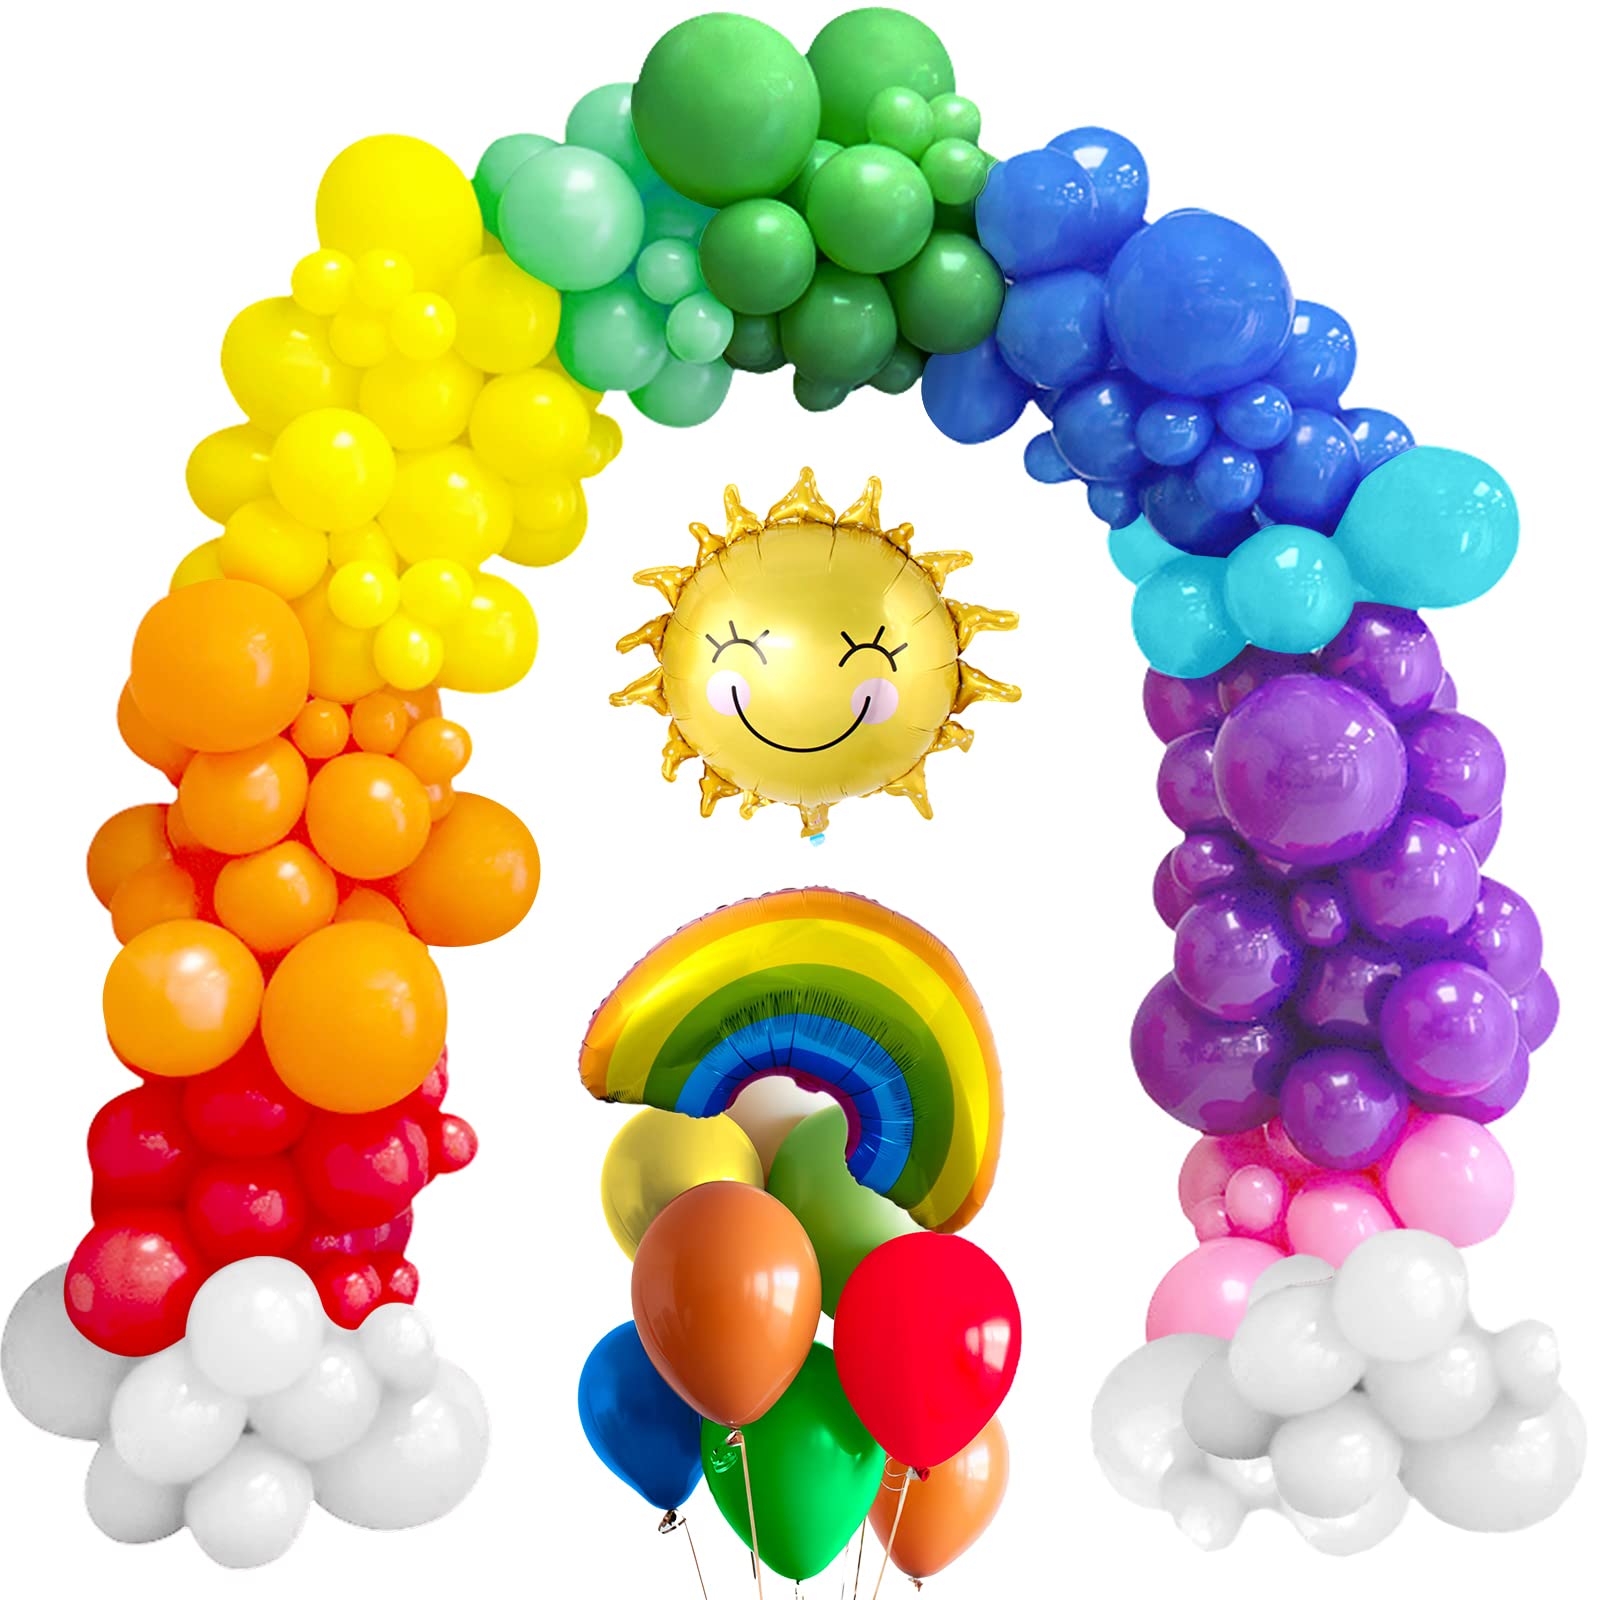 Arcada decorativa cu 60 baloane multicolore, pentru petreceri